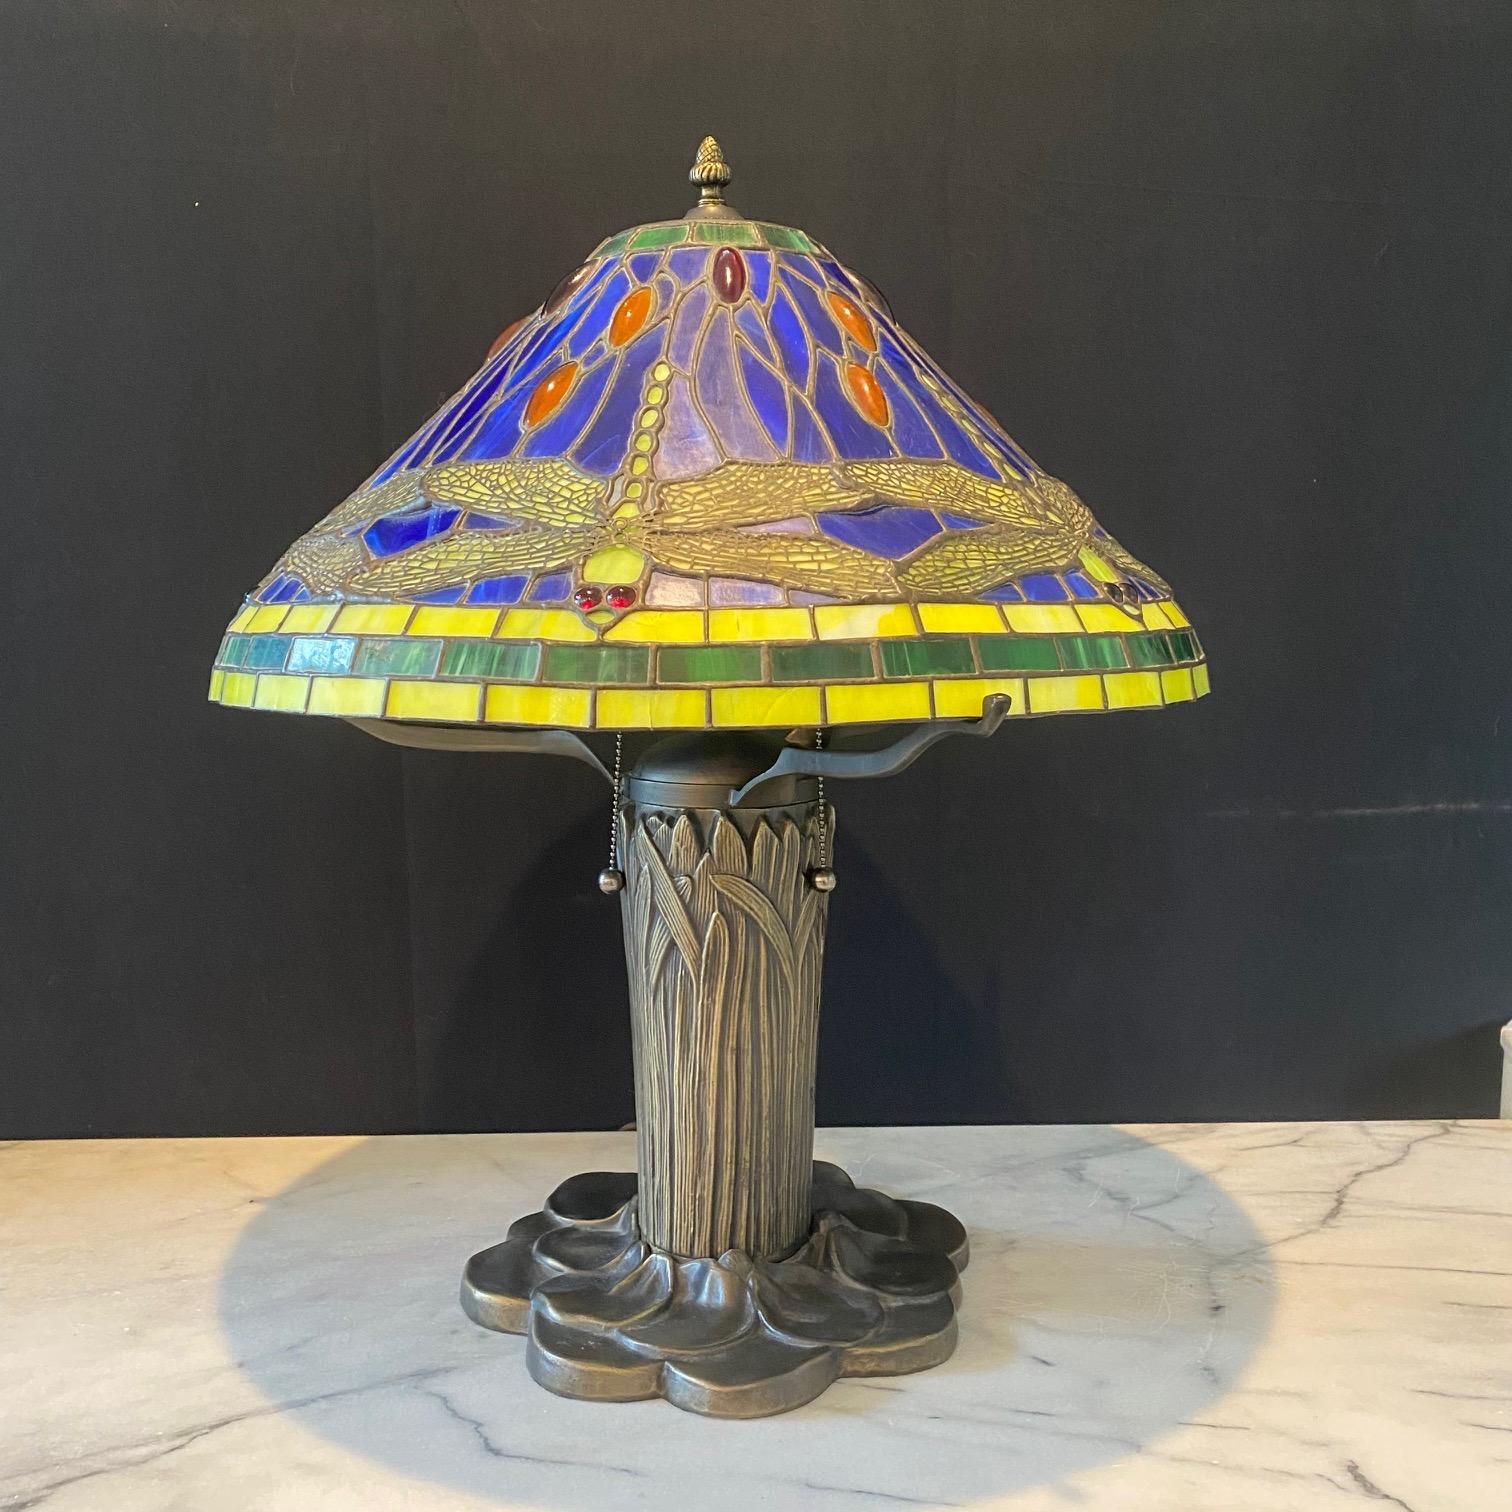  Lampe de table de style Art Nouveau Tiffany avec abat-jour en verre au plomb à motifs de libellules avec panneaux en verre teinté et base en quenouille en bronze. Une belle lampe de table en vitrail avec sa base en forme de nénuphar et de gaines de